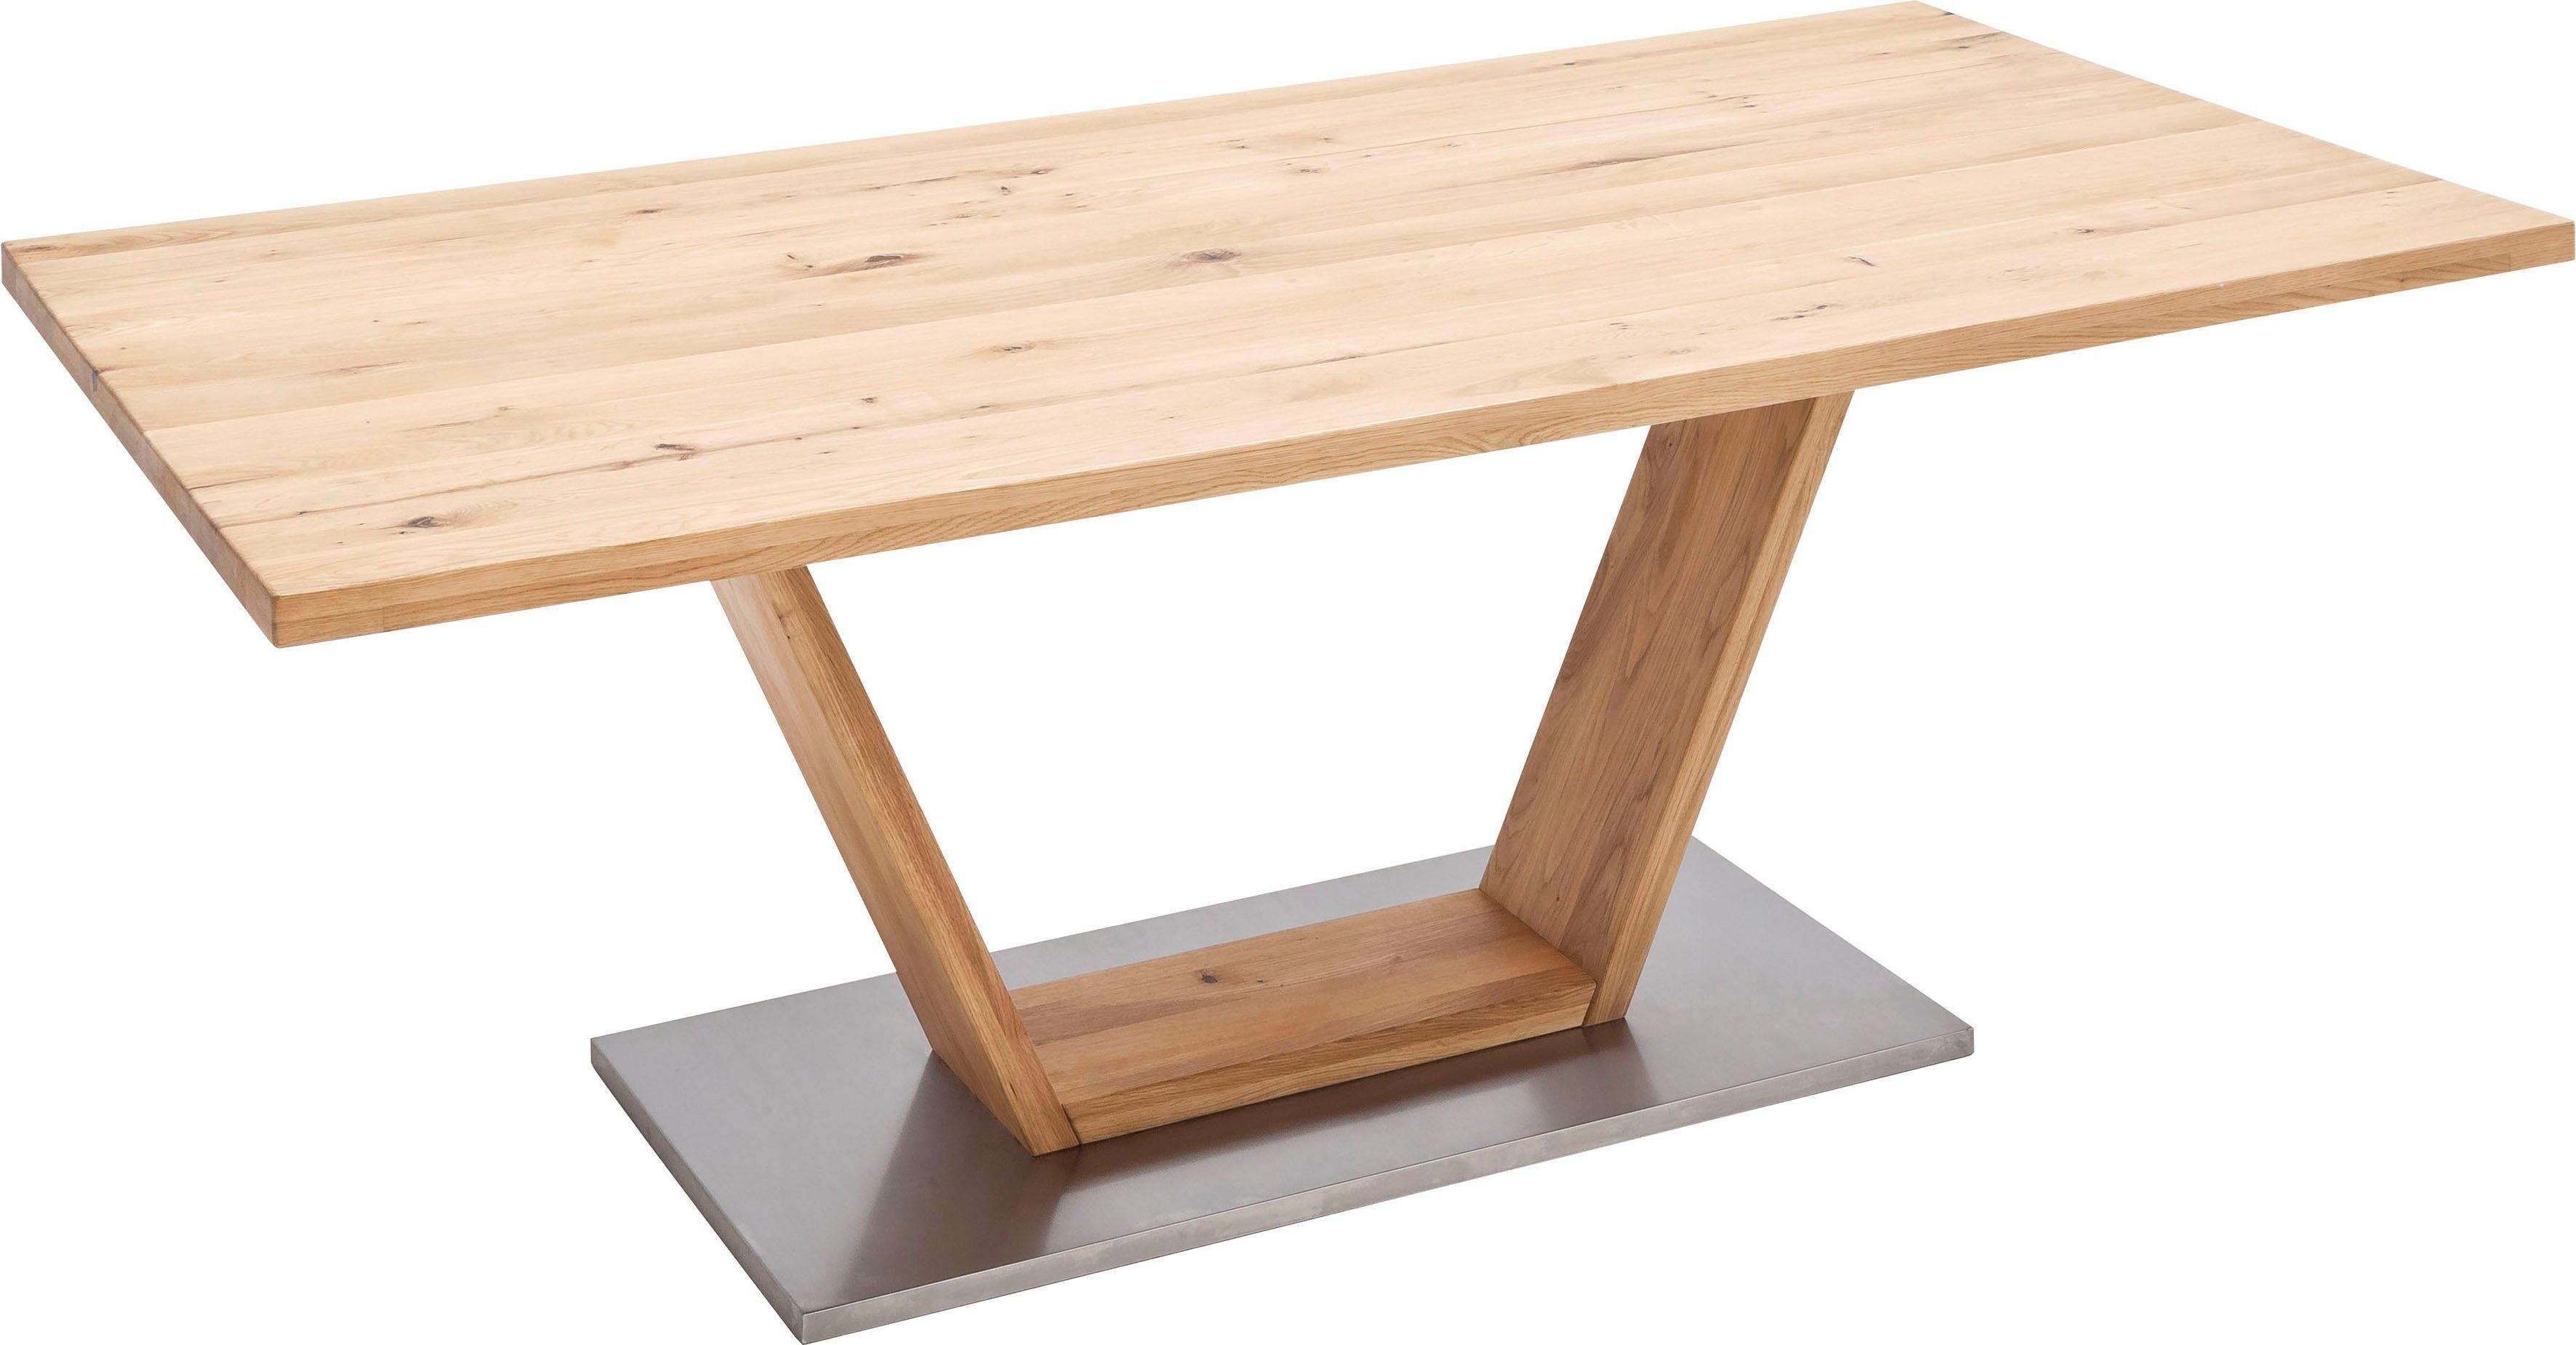 MCA furniture Eettafel Greta Eettafel massief hout met schaaldeel, rechte rand of gedeeld tafelblad